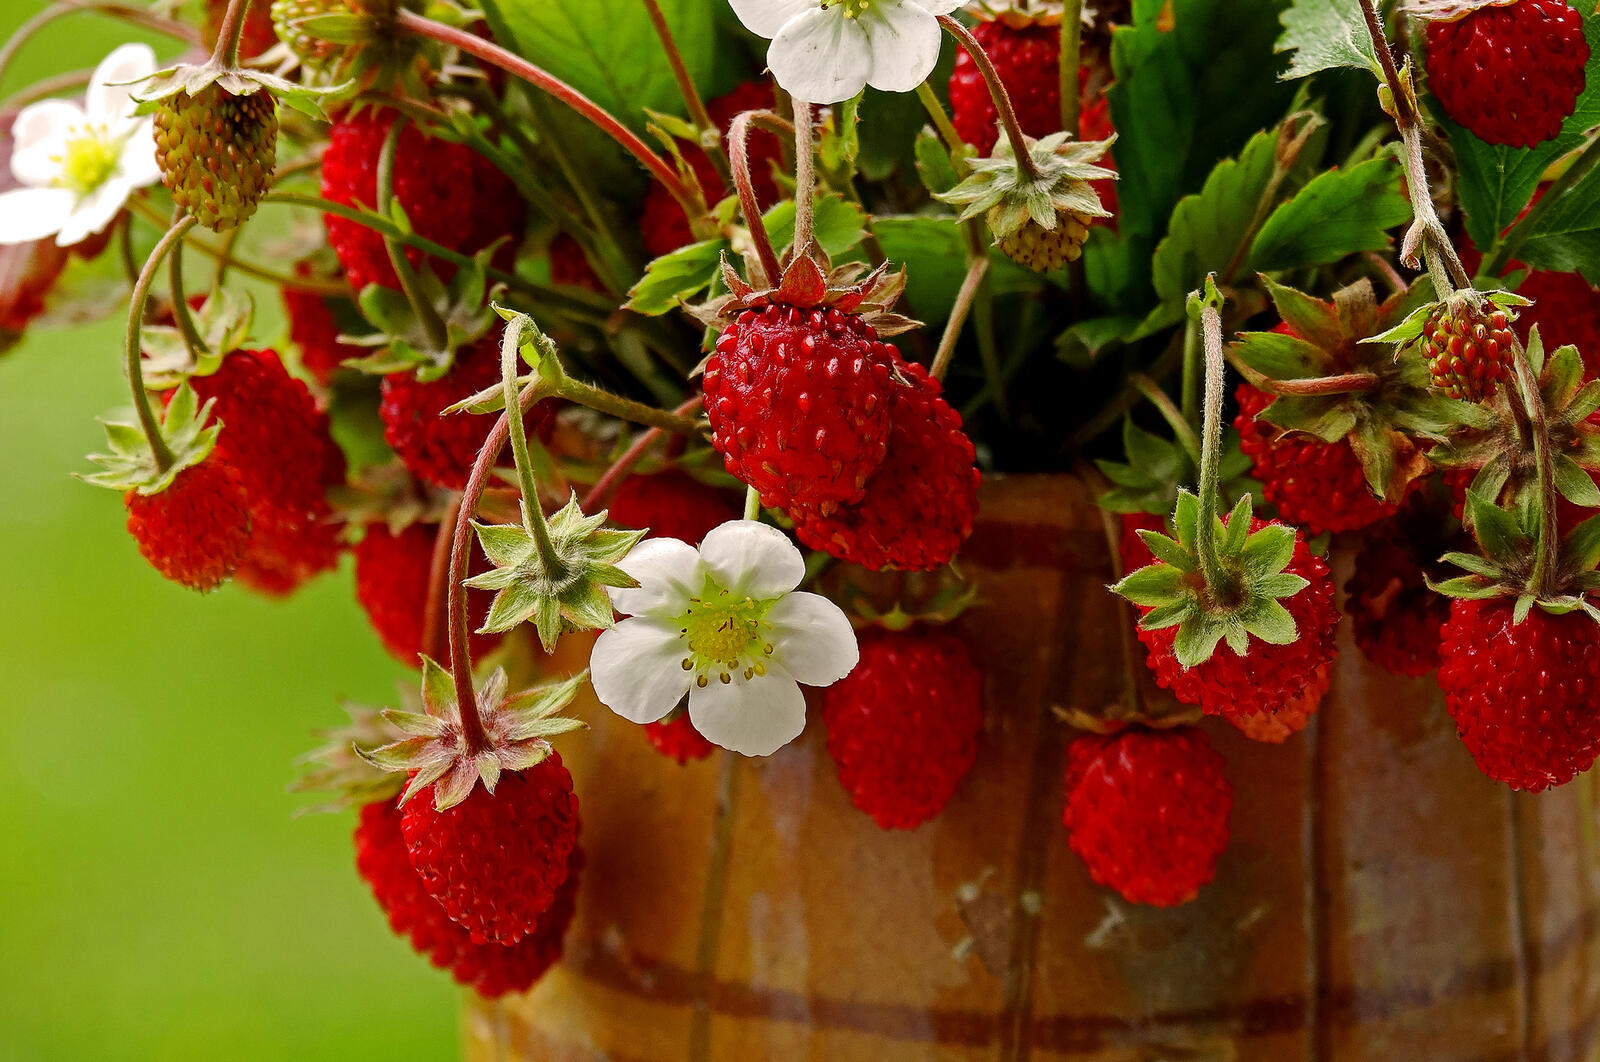 Wallpapers strawberries berries flowers on the desktop